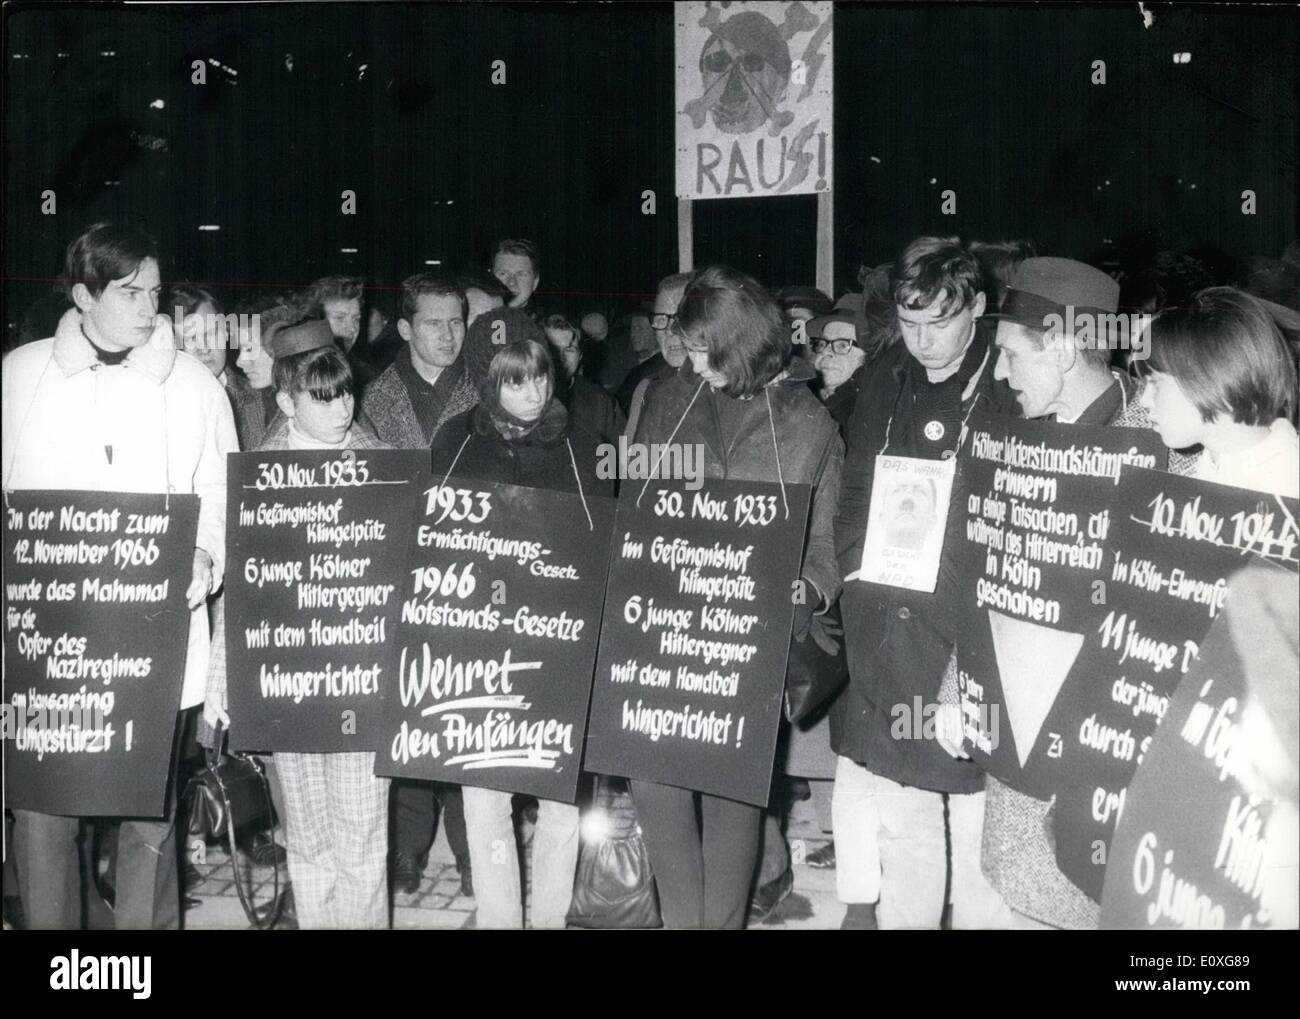 Nov. 11, 1966 - Manifestazione contro la NPD in Koln. Su 24.11.1966 vi è stata una dimostrazione contro il partito tedesco NPD. Circa mille persone hanno preso parte, si sono recati al monumento di pietra per le vittime del "Renon Reich'' e mettere giù là una ghirlanda. OPS: la dimostrazione su 24.11.1966 in Koln/ Germania. Foto Stock